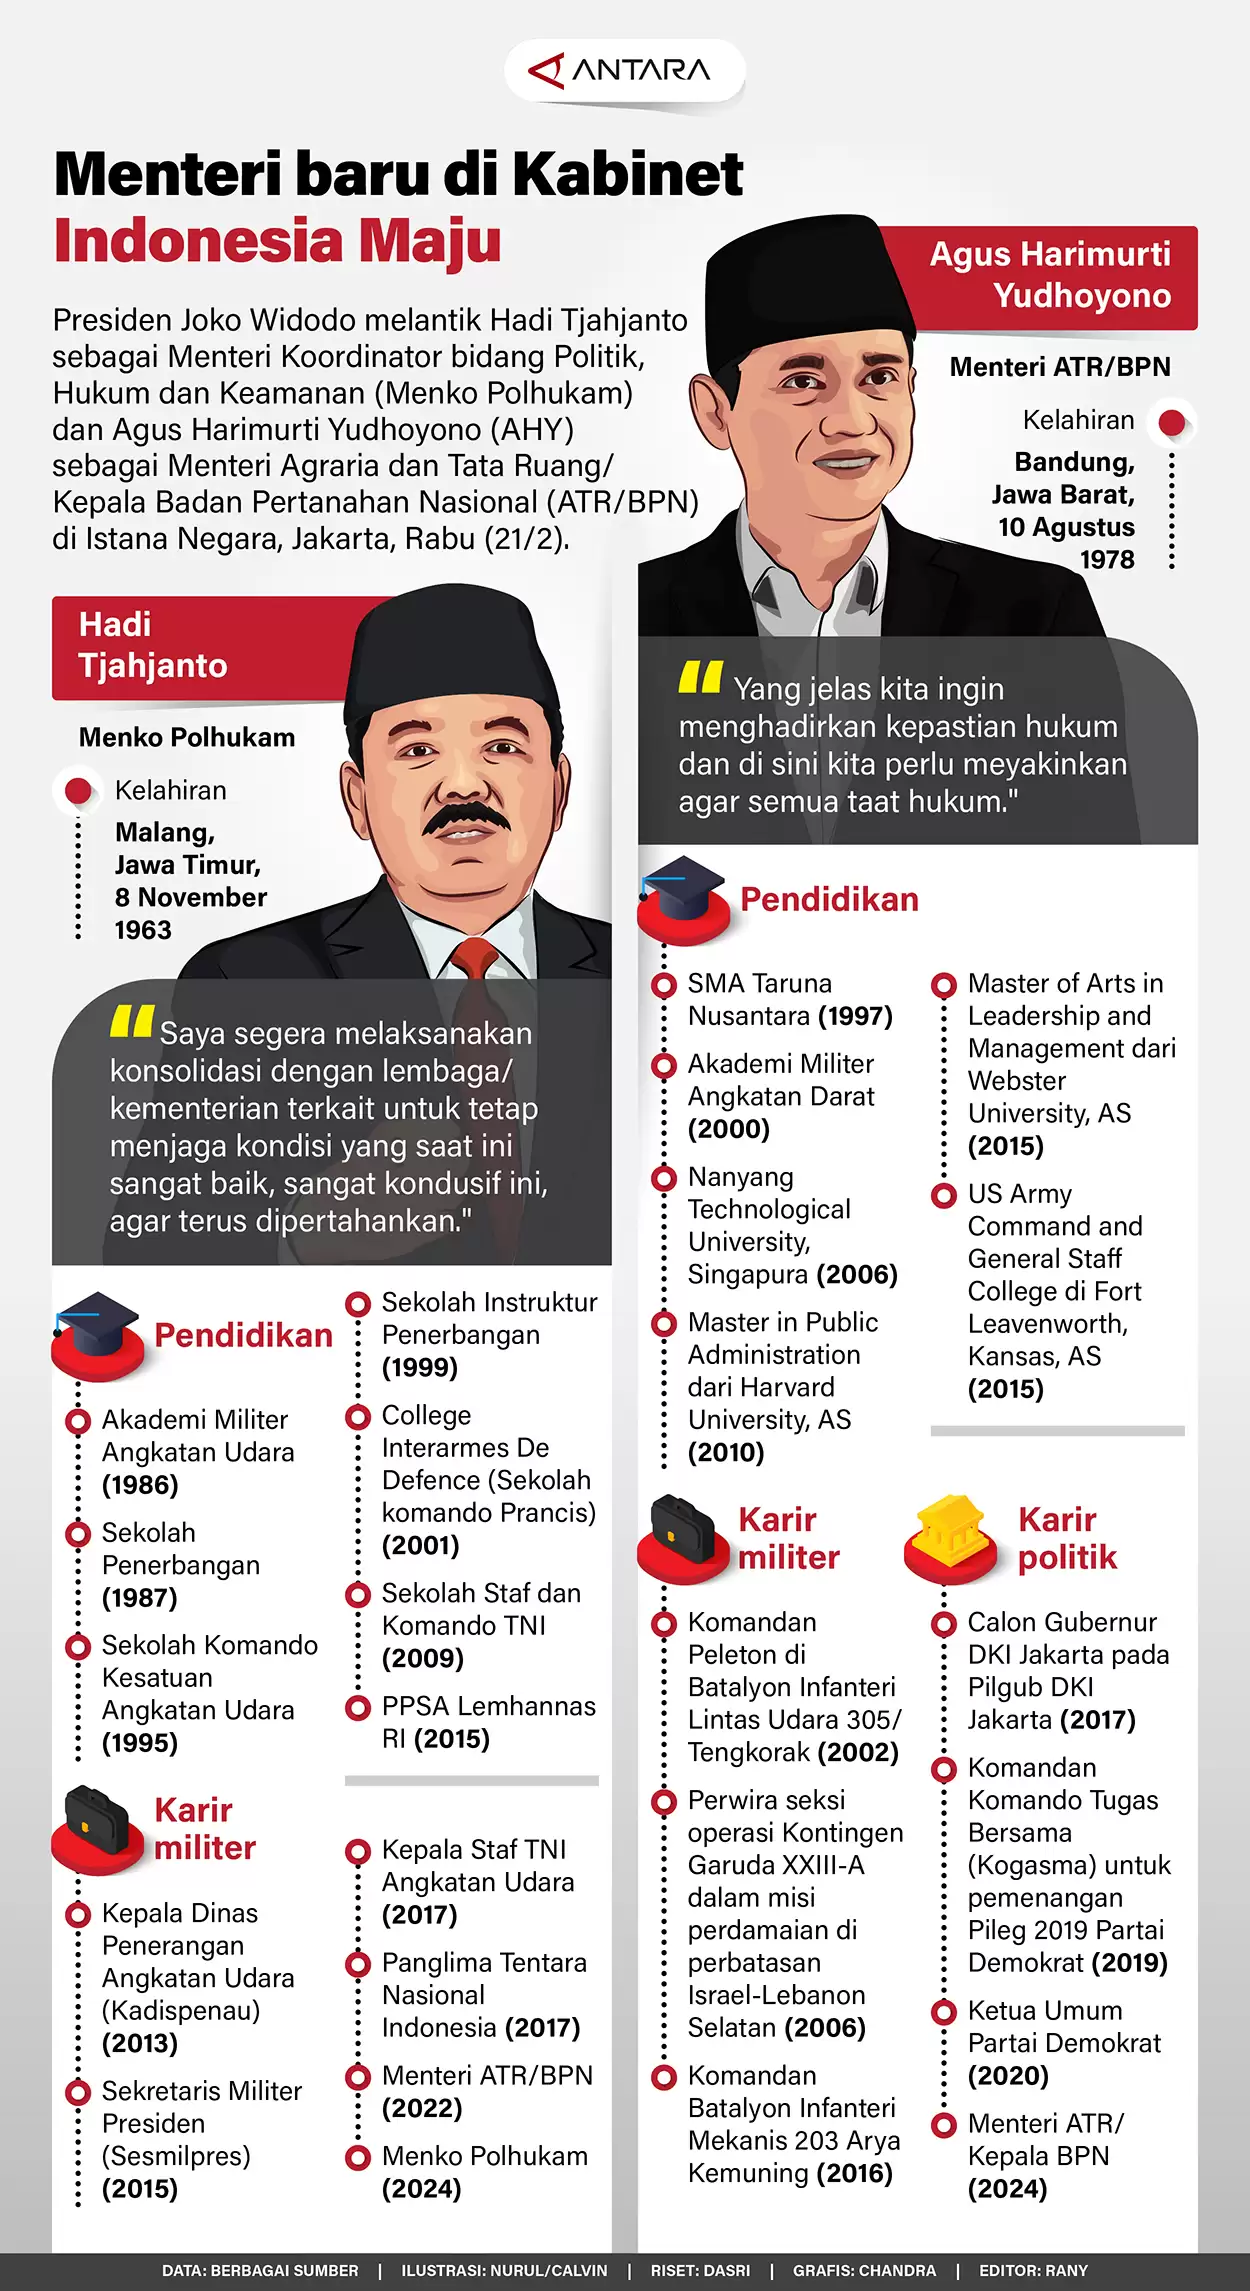 Menteri Baru di Kabinet Indonesia Maju